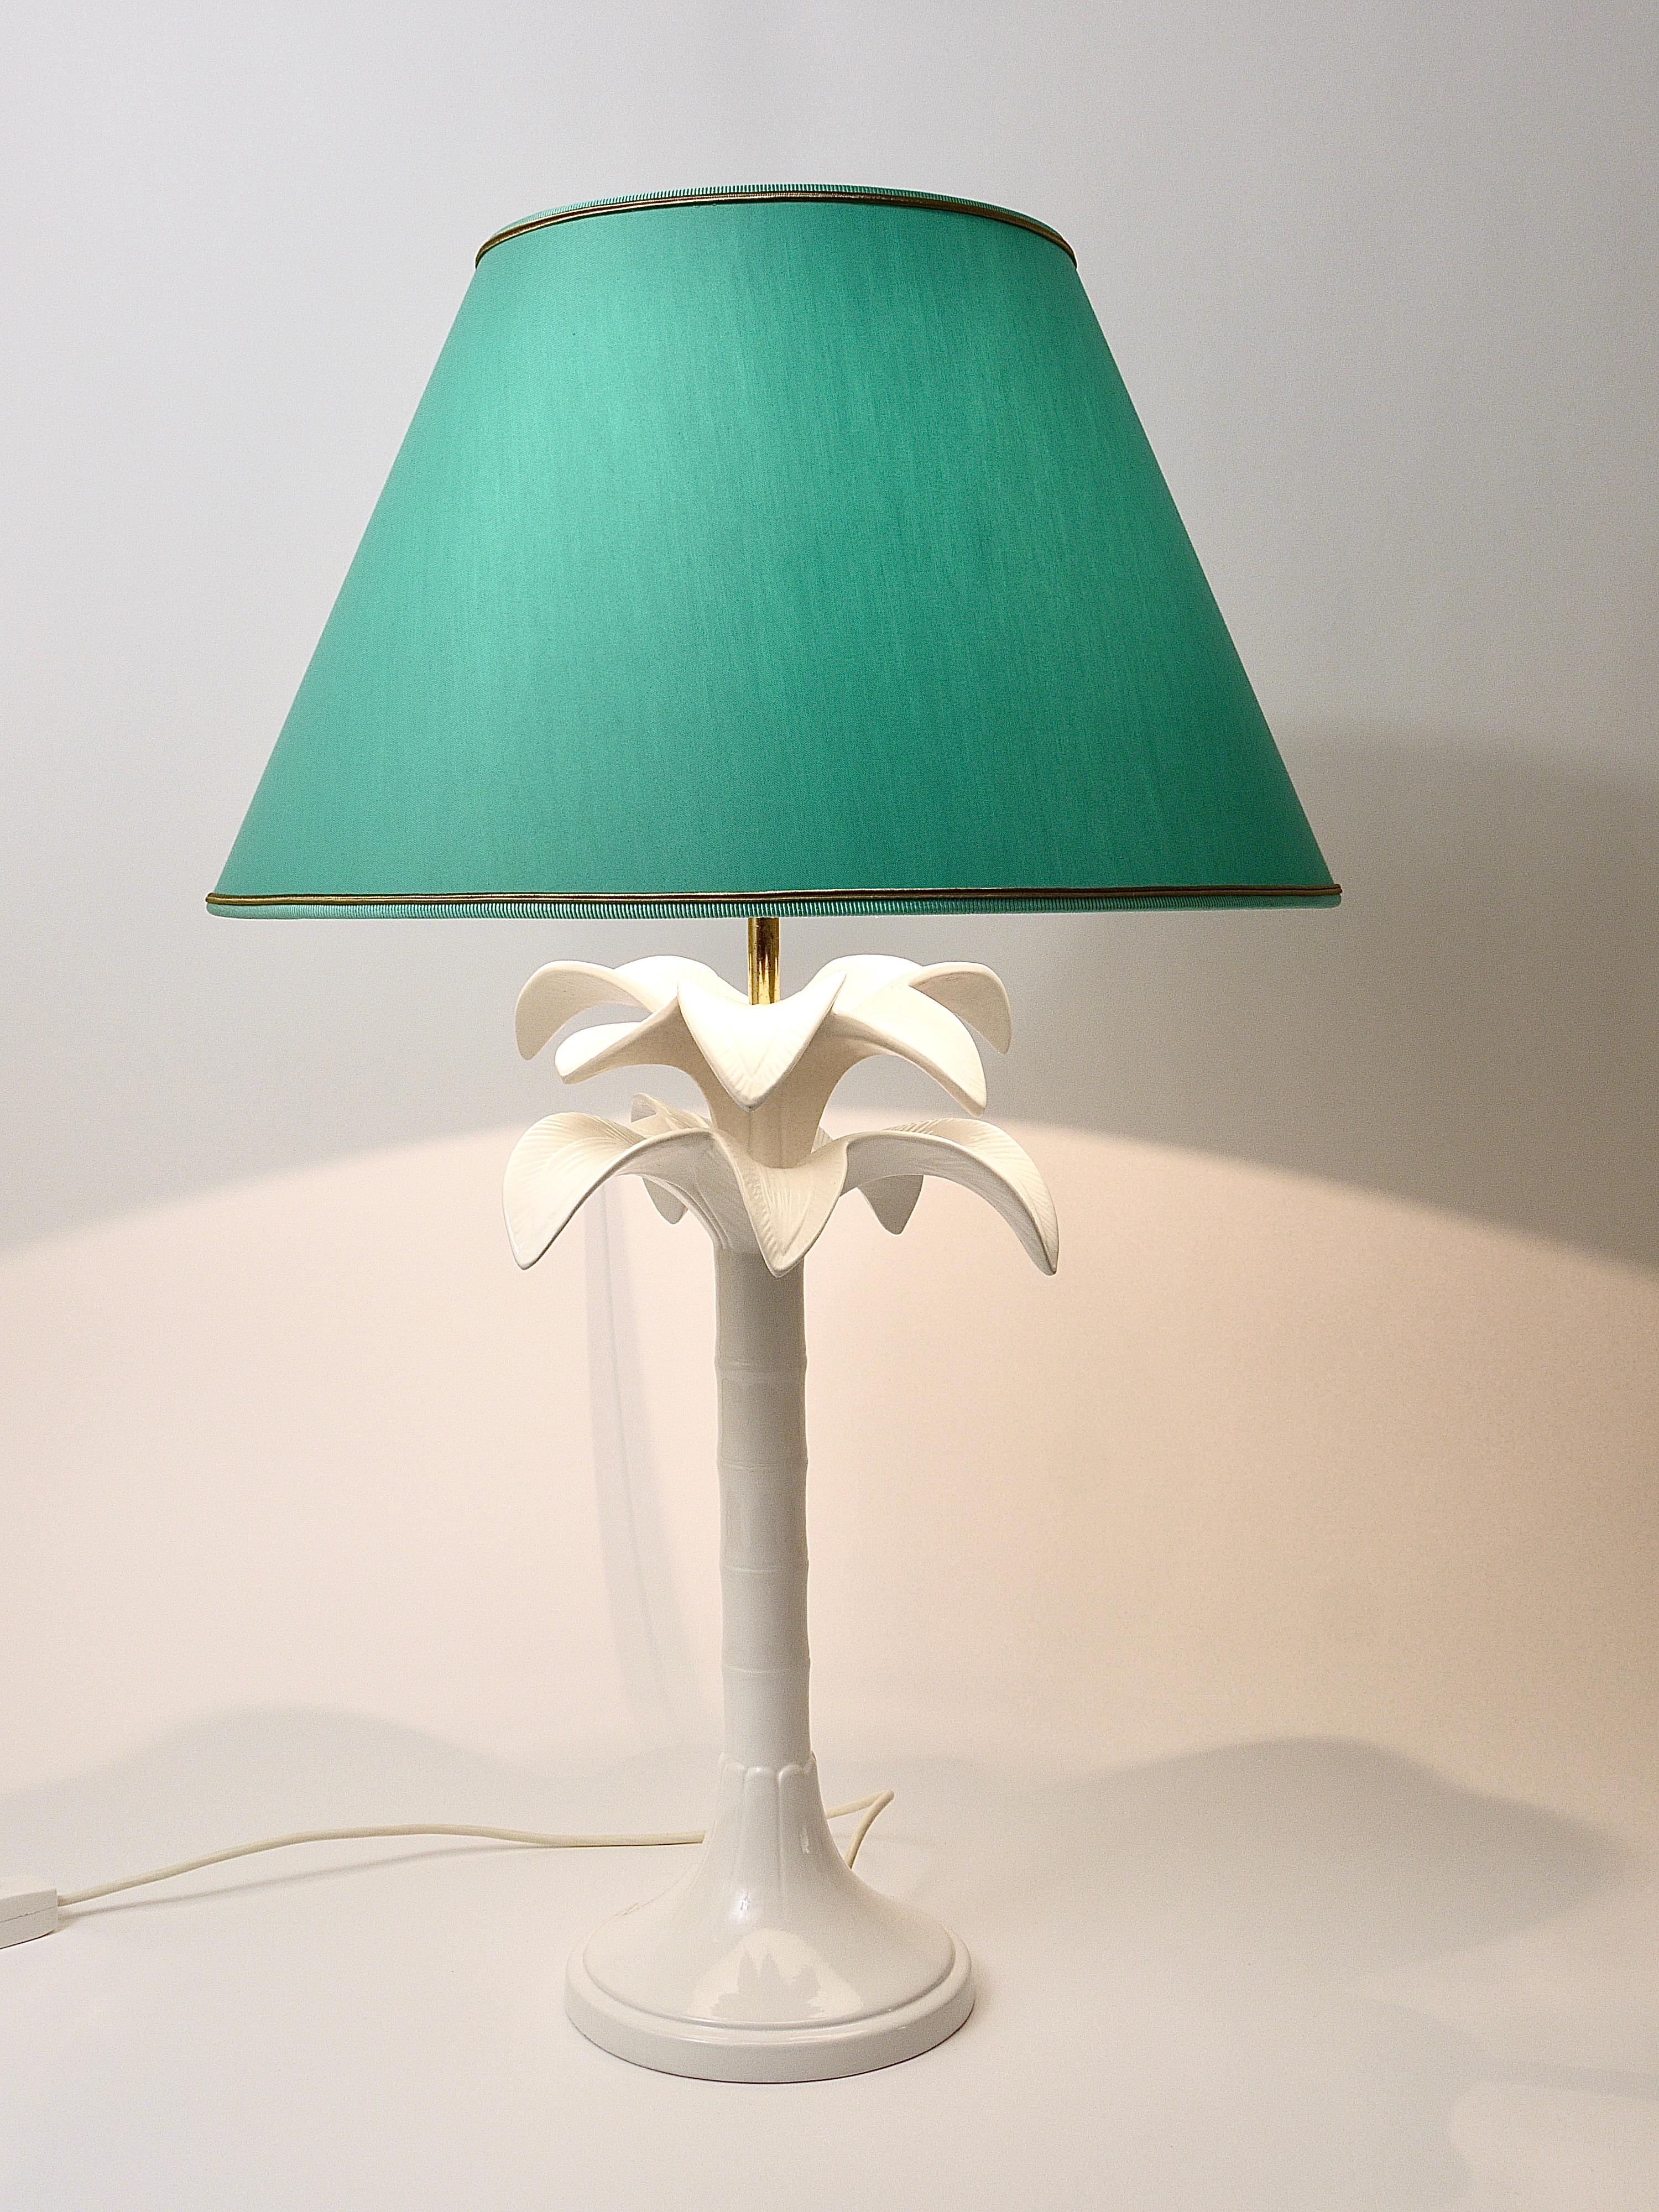 Schöne und dekorative Tischleuchte / Beistellleuchte in Form einer Palme aus den 1970er Jahren, entworfen von Tommasi Barbi, hergestellt in Italien. Der Sockel ist aus weiß glasierter Keramik gefertigt. Die Lampe wird mit einem aufgearbeiteten